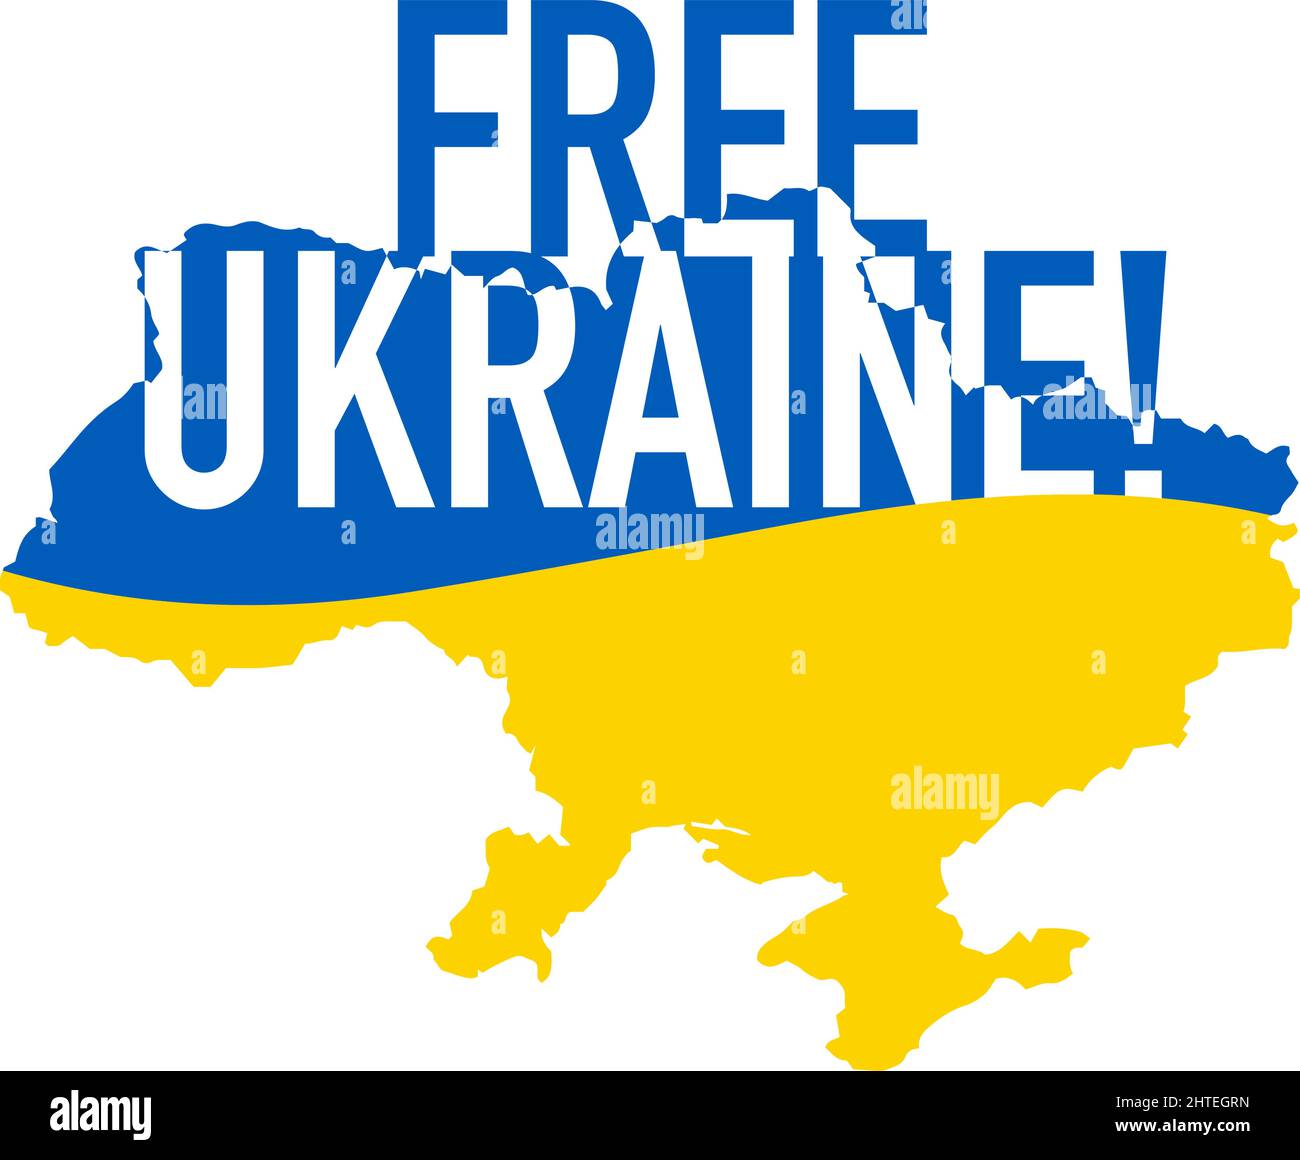 Caratteri liberi dell'Ucraina sull'icona gialla blu della mappa. Icona di sostegno per Kyiv e Ucraina. Resta forte insieme. Simbolo patriottico, icona.-SupplementalCa Illustrazione Vettoriale